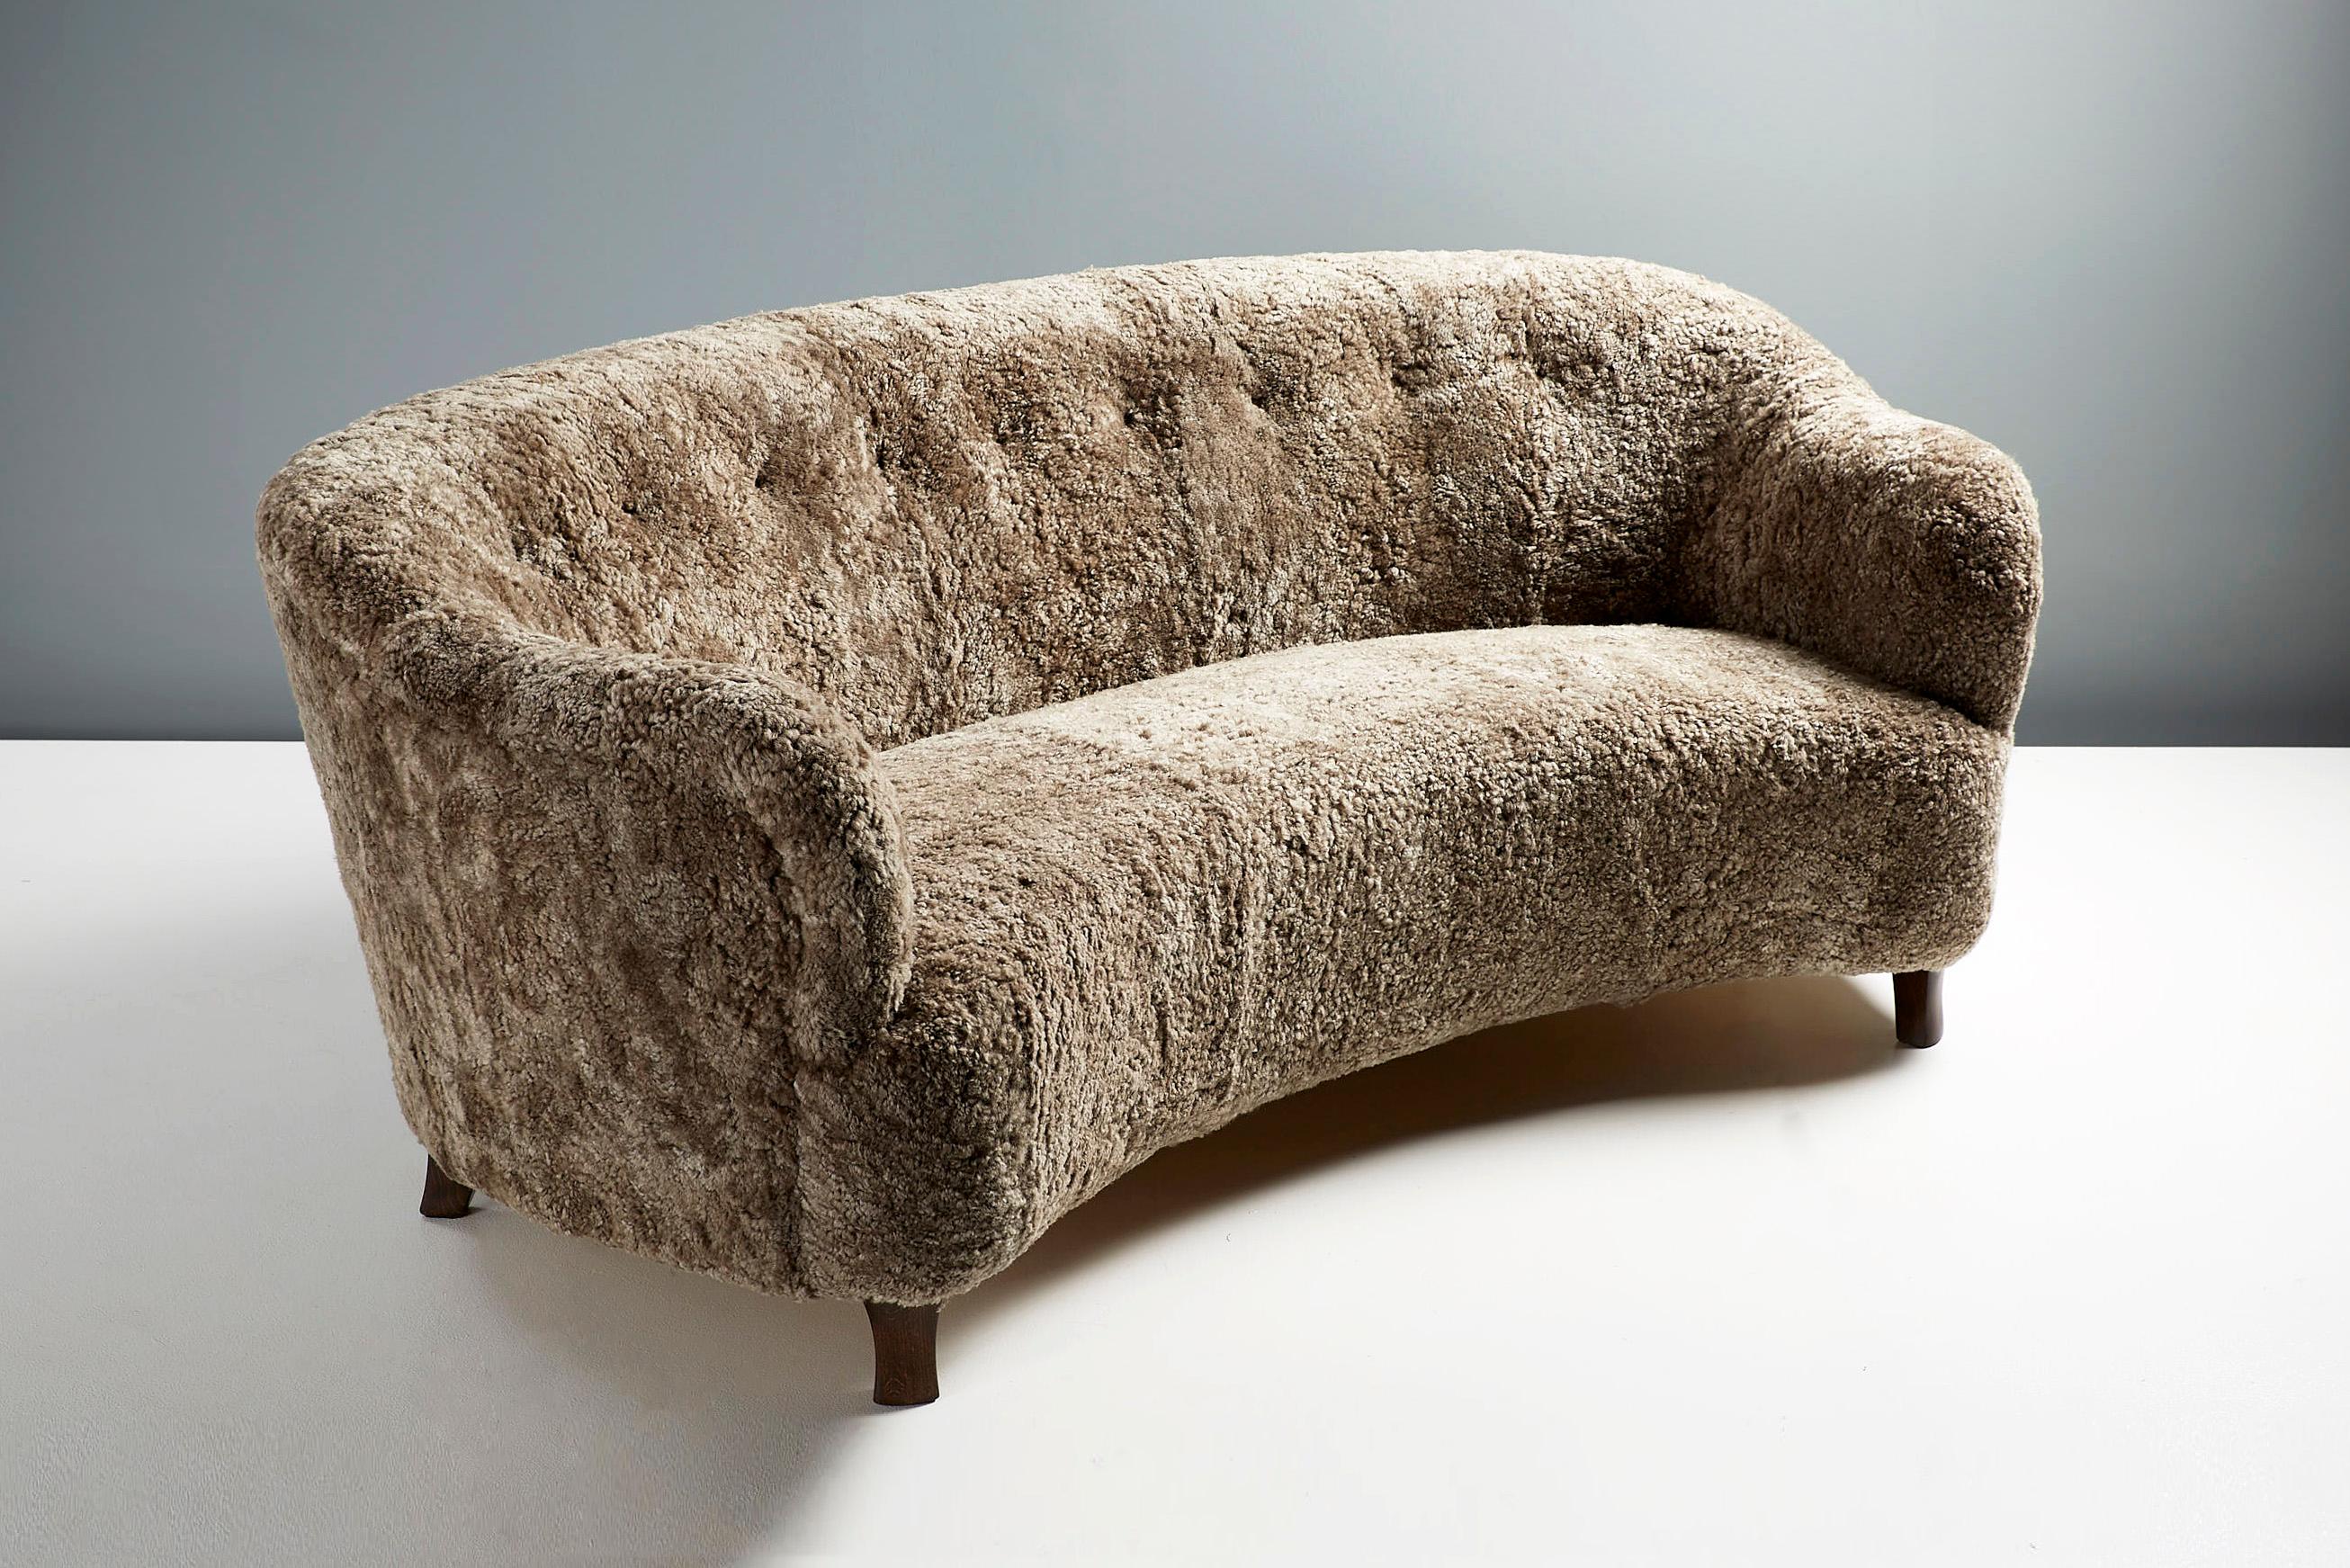 Dagmar Elias geschwungenes Sofa.

Das Elias-Sofa wurde in unseren Werkstätten in London entwickelt und handgefertigt. Die Sofabeine sind in geölter Eiche, dunkel geräucherter Eiche oder dunkel gebeizter Buche erhältlich. Das Gestell ist